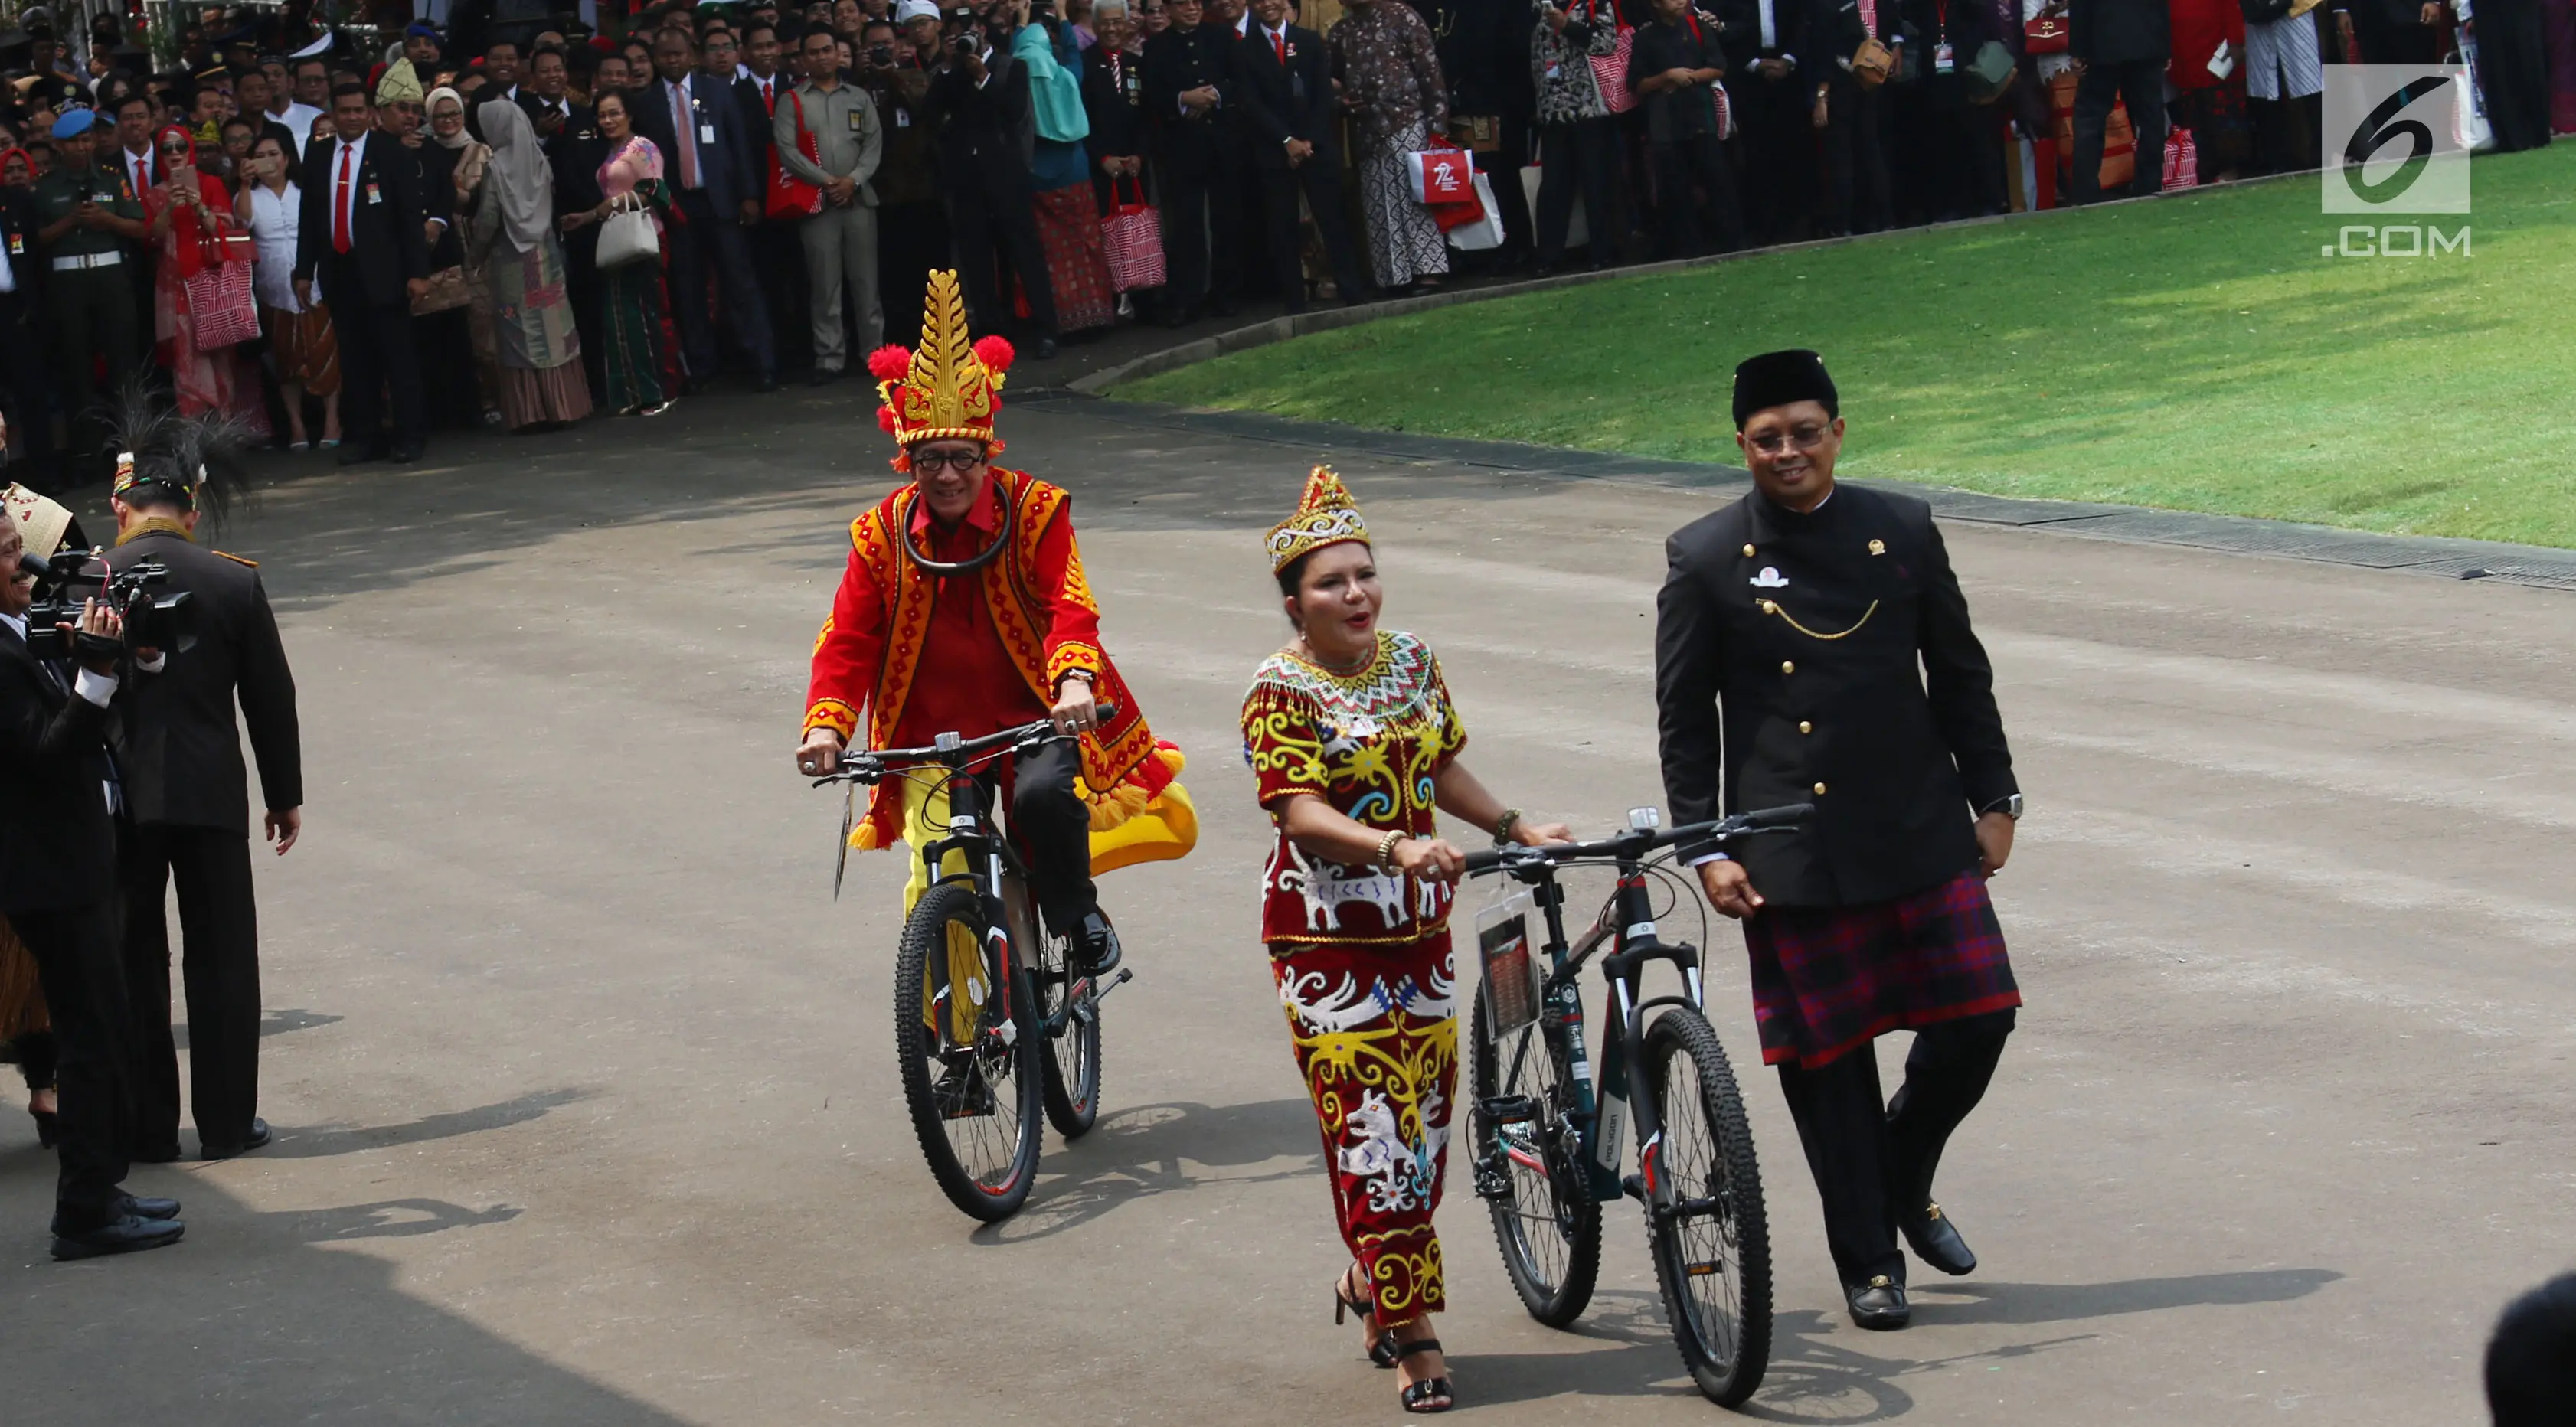 Istri Wakil Ketua MPR Aganti Sulie Mahyuddin membawa hadiah sepeda pemberian dari Presiden Jokowi usai peringatan HUT RI ke 72 di Istana Merdeka, Jakarta, Kamis (17/8). Aganti mengenakan kostum adat Dayak. (Liputan6.com/Angga Yuniar)